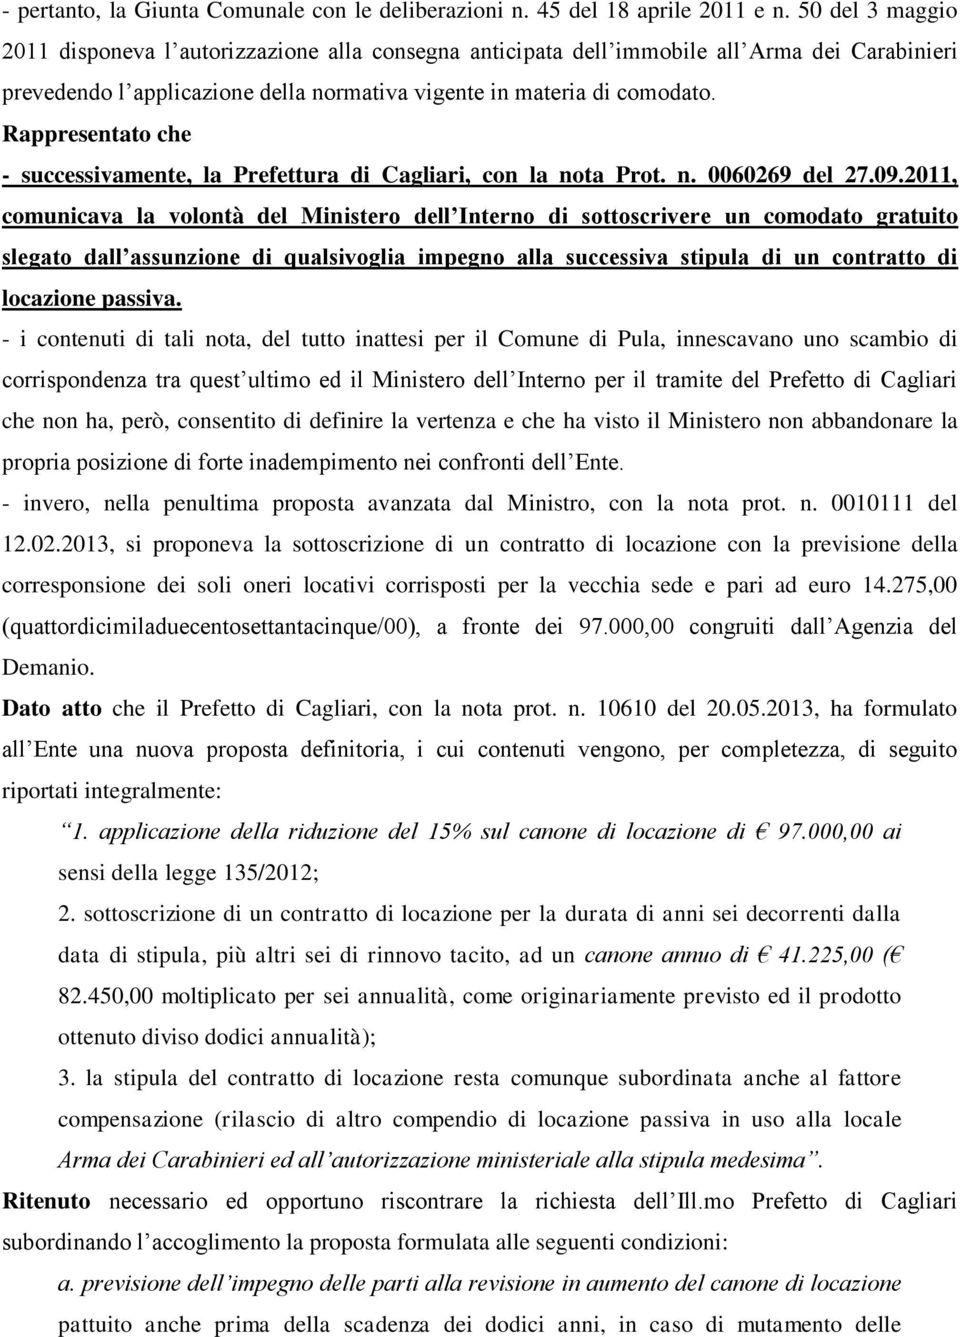 Rappresentato che - successivamente, la Prefettura di Cagliari, con la nota Prot. n. 0060269 del 27.09.